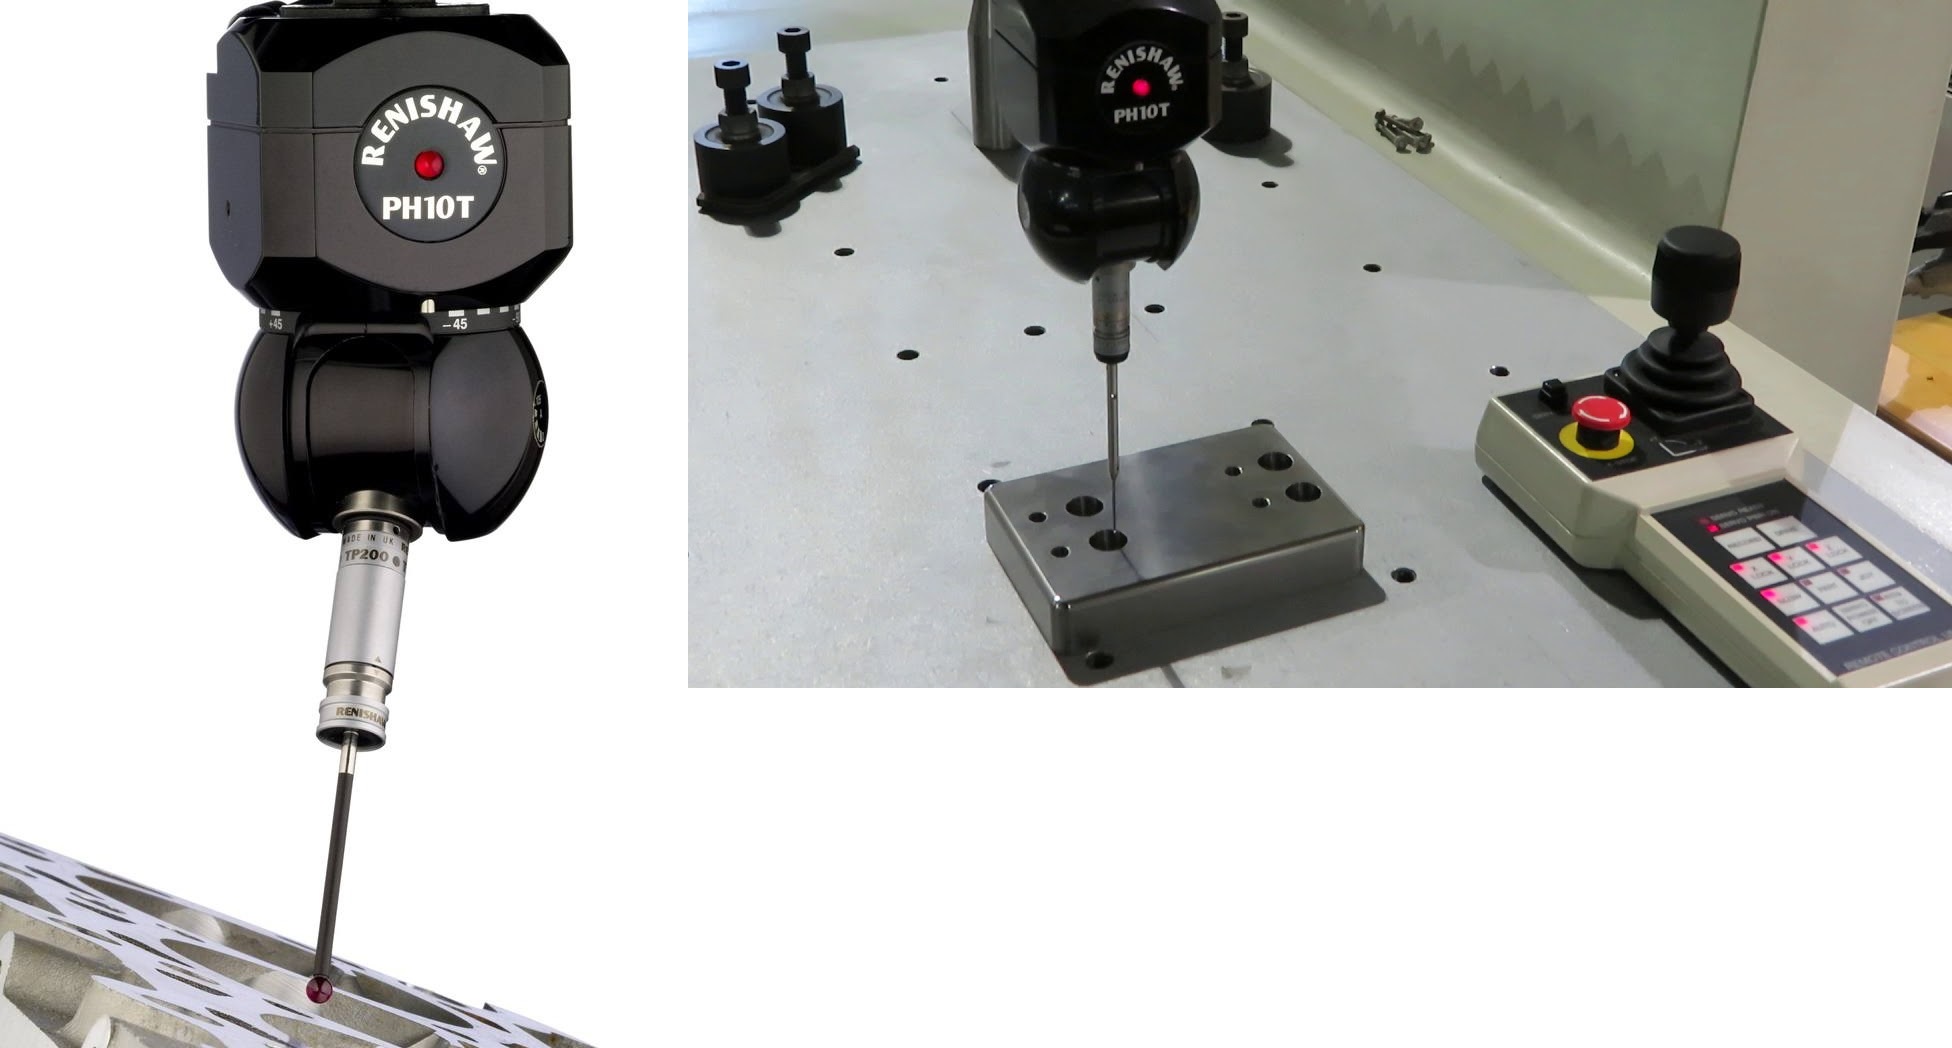 Cung cấp - Sửa chữa - Lắp đặt Đầu đo PH10T cho máy đo tọa độ tự động 3 chiều CMM